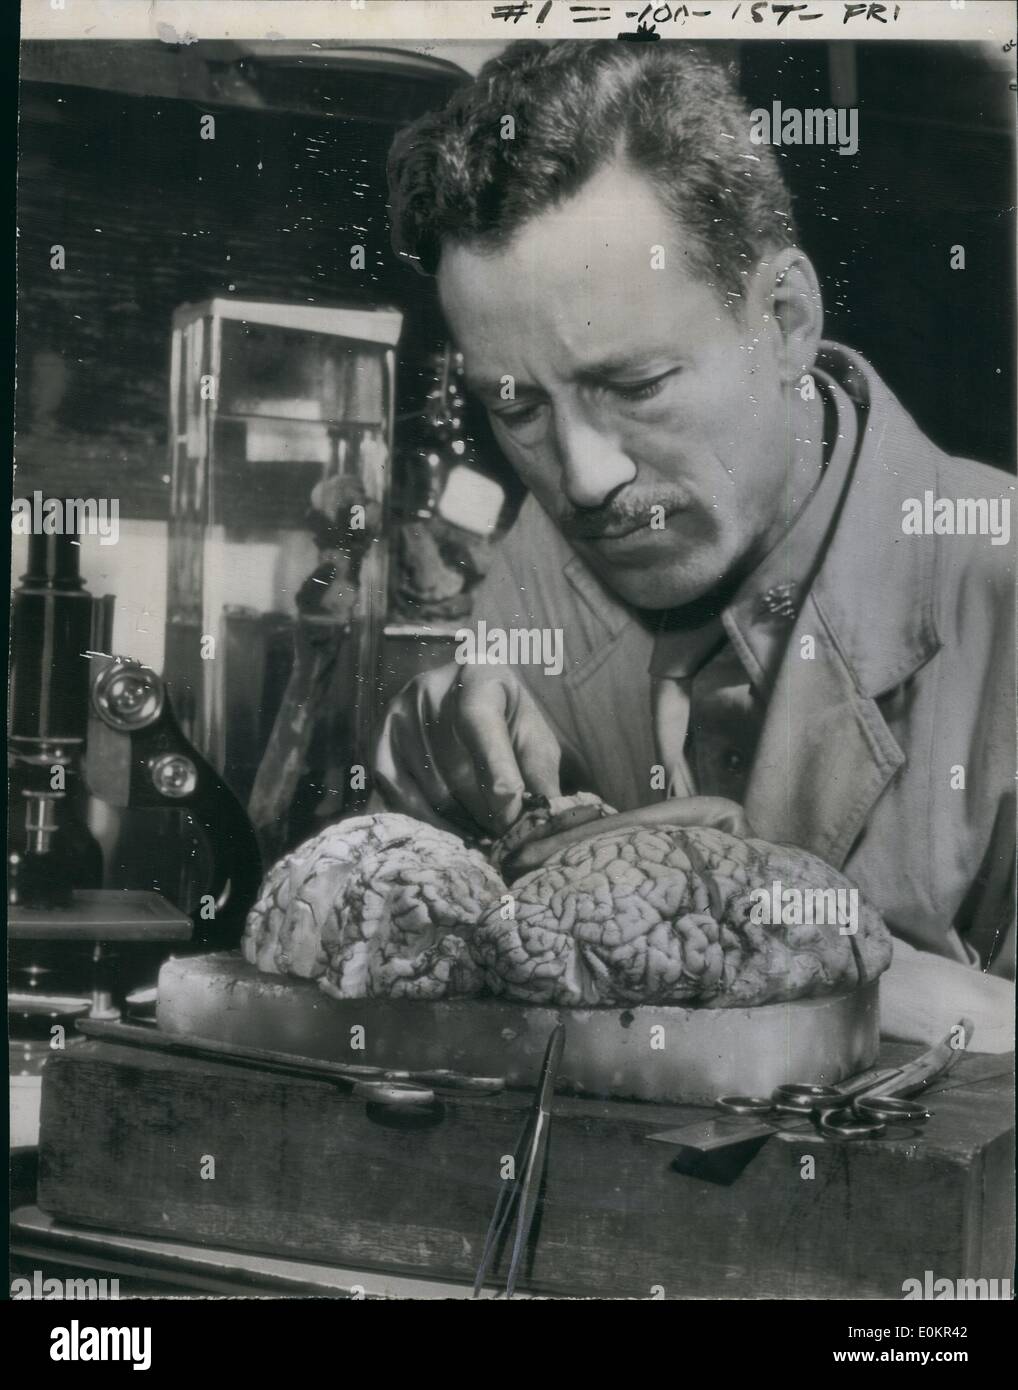 01 janv., 1946 - Médecin militaire le cerveau d'études Ley : Major Webb haymaker, neuropathologiste de l'Institut de pathologie de l'armée, procède à l'examen post mortem de cerveau du Dr Robert Ley, leader nazi qui s'est suicidé. Le cerveau a été transporté par avion vers les États-Unis à partir de l'Allemagne pour l'examen, qui a révélé que Ley avait depuis longtemps comme une maladie du cerveau '«suffisante...d'avoir affecté (sa), les facultés mentales et émotionnelles. Banque D'Images